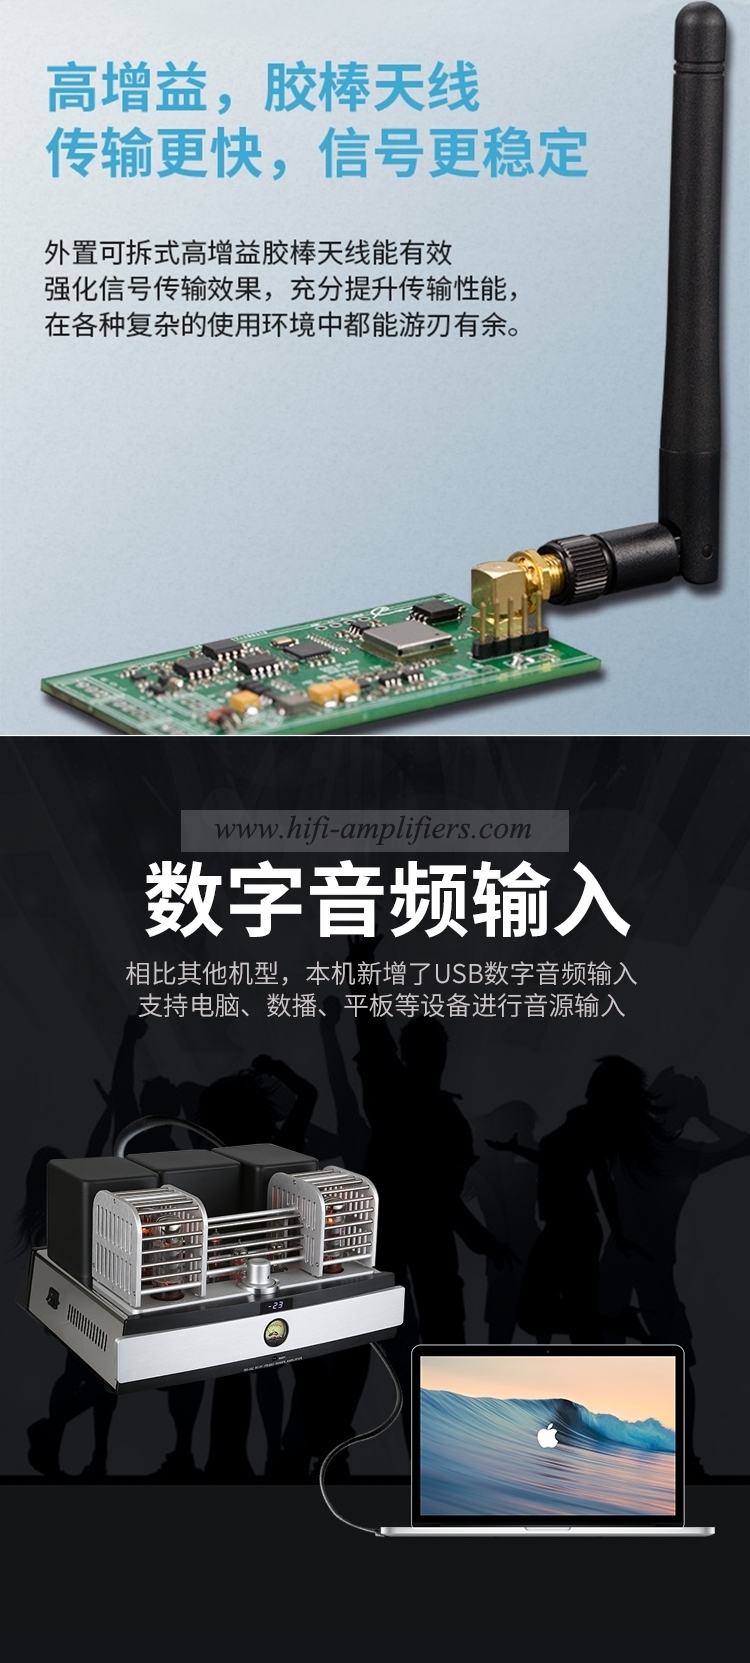 YAQIN MS-20L USB 디지털 튜브 앰프 EL34 튜브 앰프 블루투스 전자 튜브 오디오 앰프 미국 CSR8675 HIFI 튜브 앰프